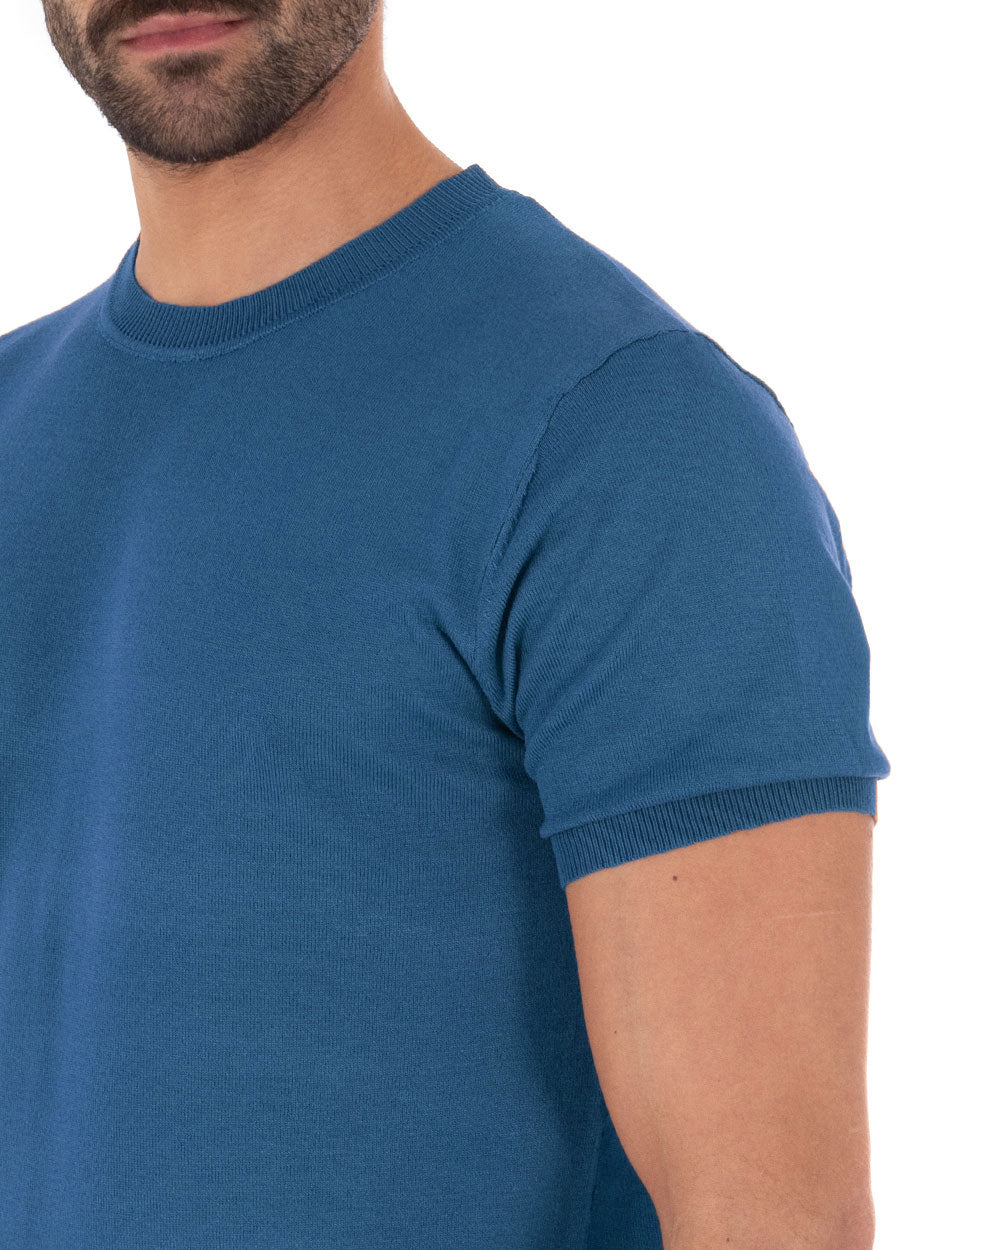 T-Shirt Uomo Maniche Corte Tinta Unita Ottanio Girocollo Filo Casual GIOSAL-TS3075A